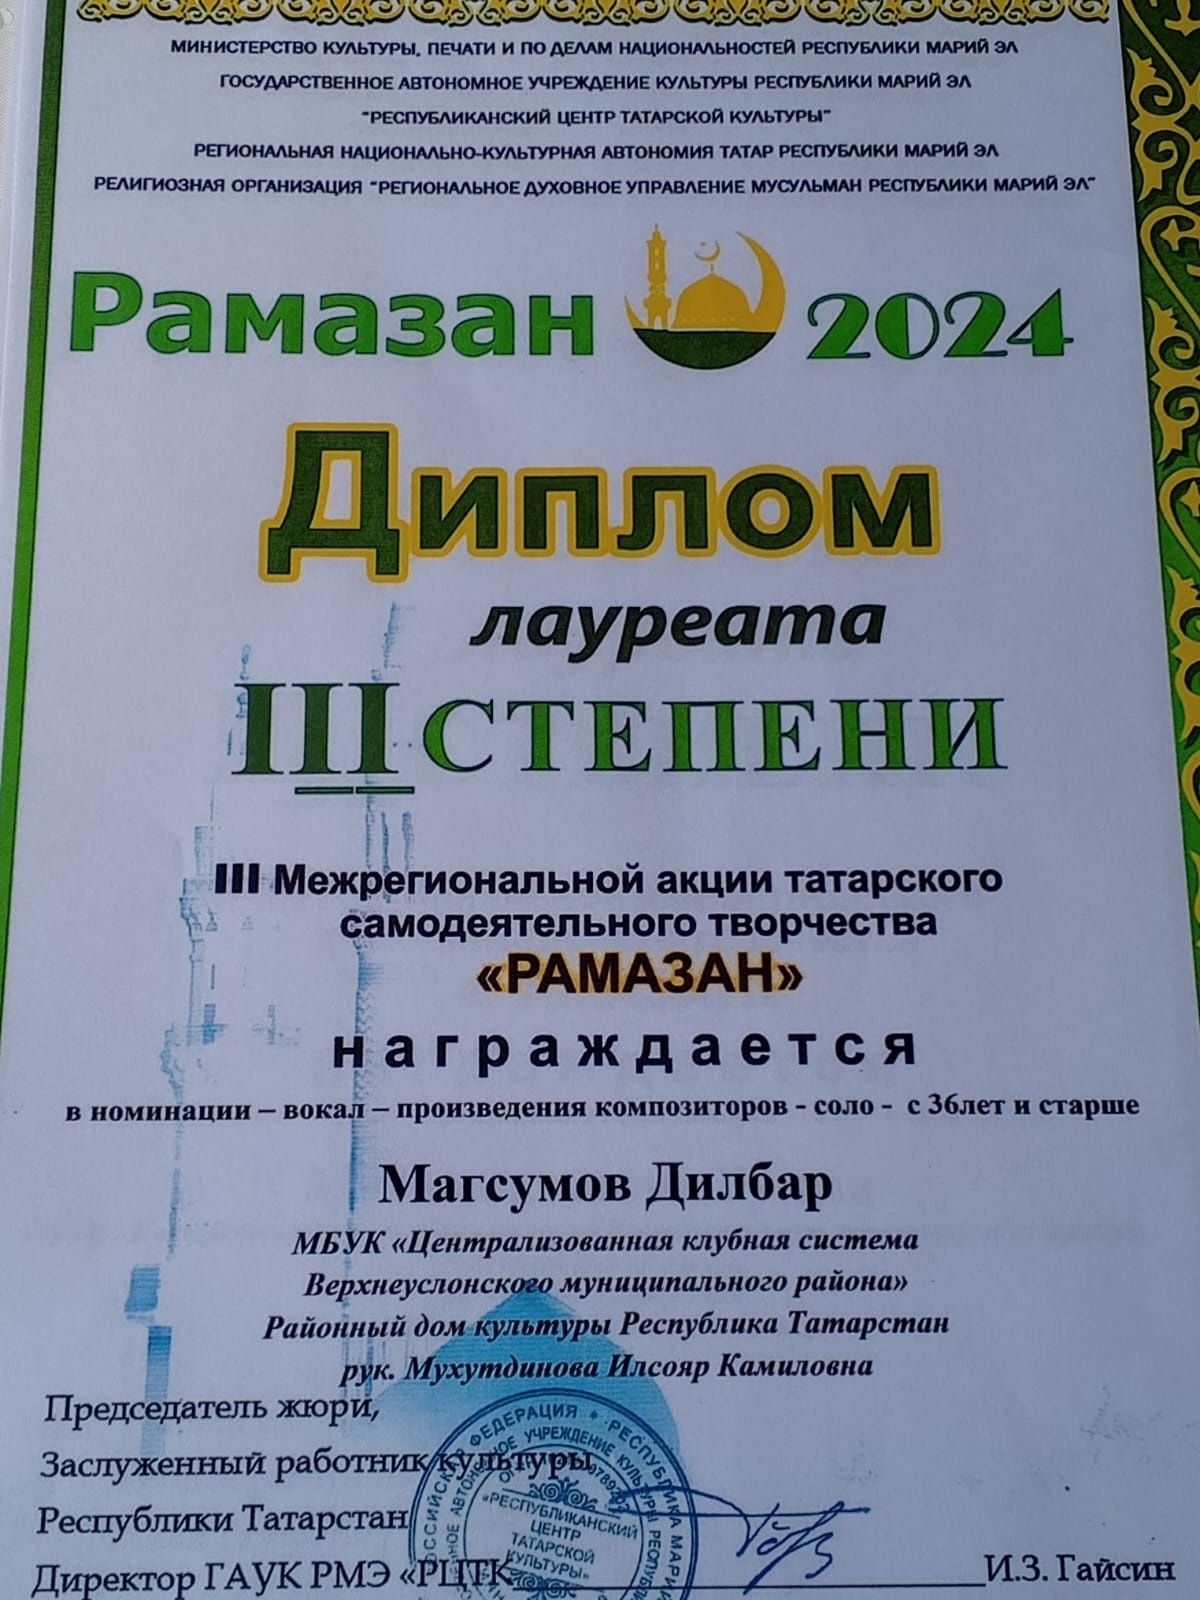 Народный коллектив «Иделькэй» из Верхнего Услона принял участие в творческой акции «Рамазан»